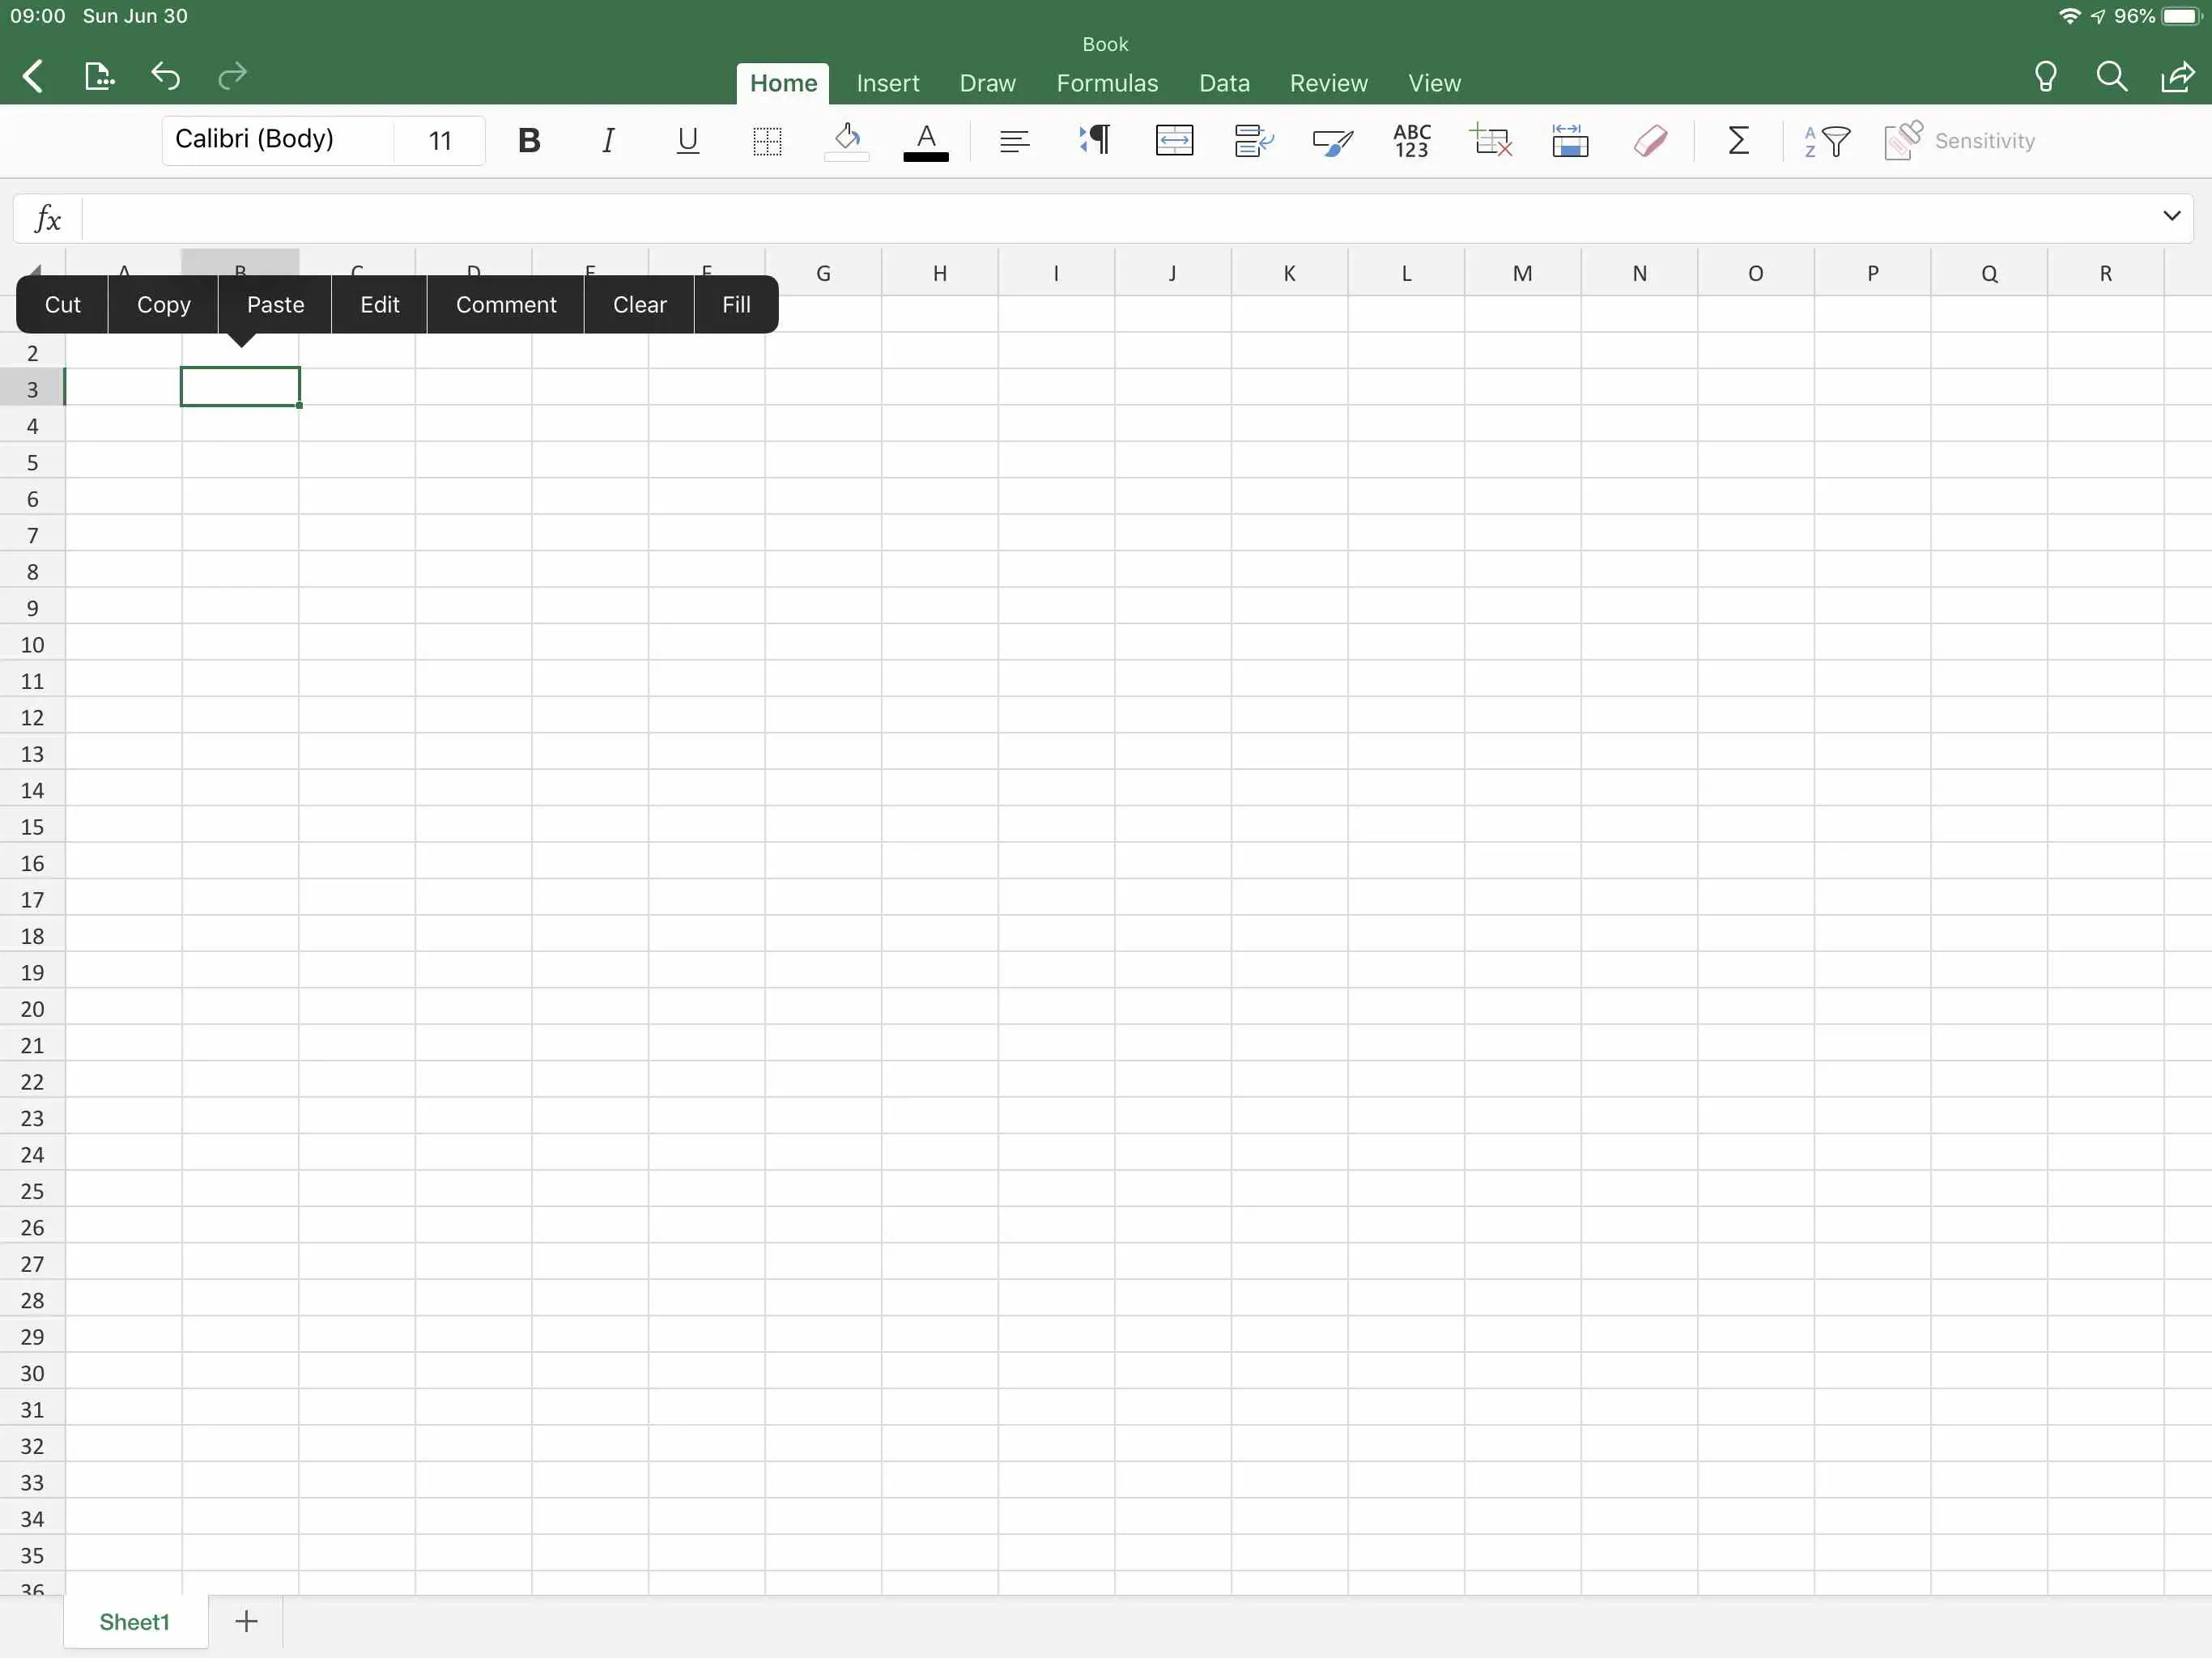 Captura de tela do Excel no iPad, com o celular tocado e as opções "Cortar, Copiar, Colar" exibidas.  Toque em colar para inserir o conteúdo da área de transferência na célula selecionada.